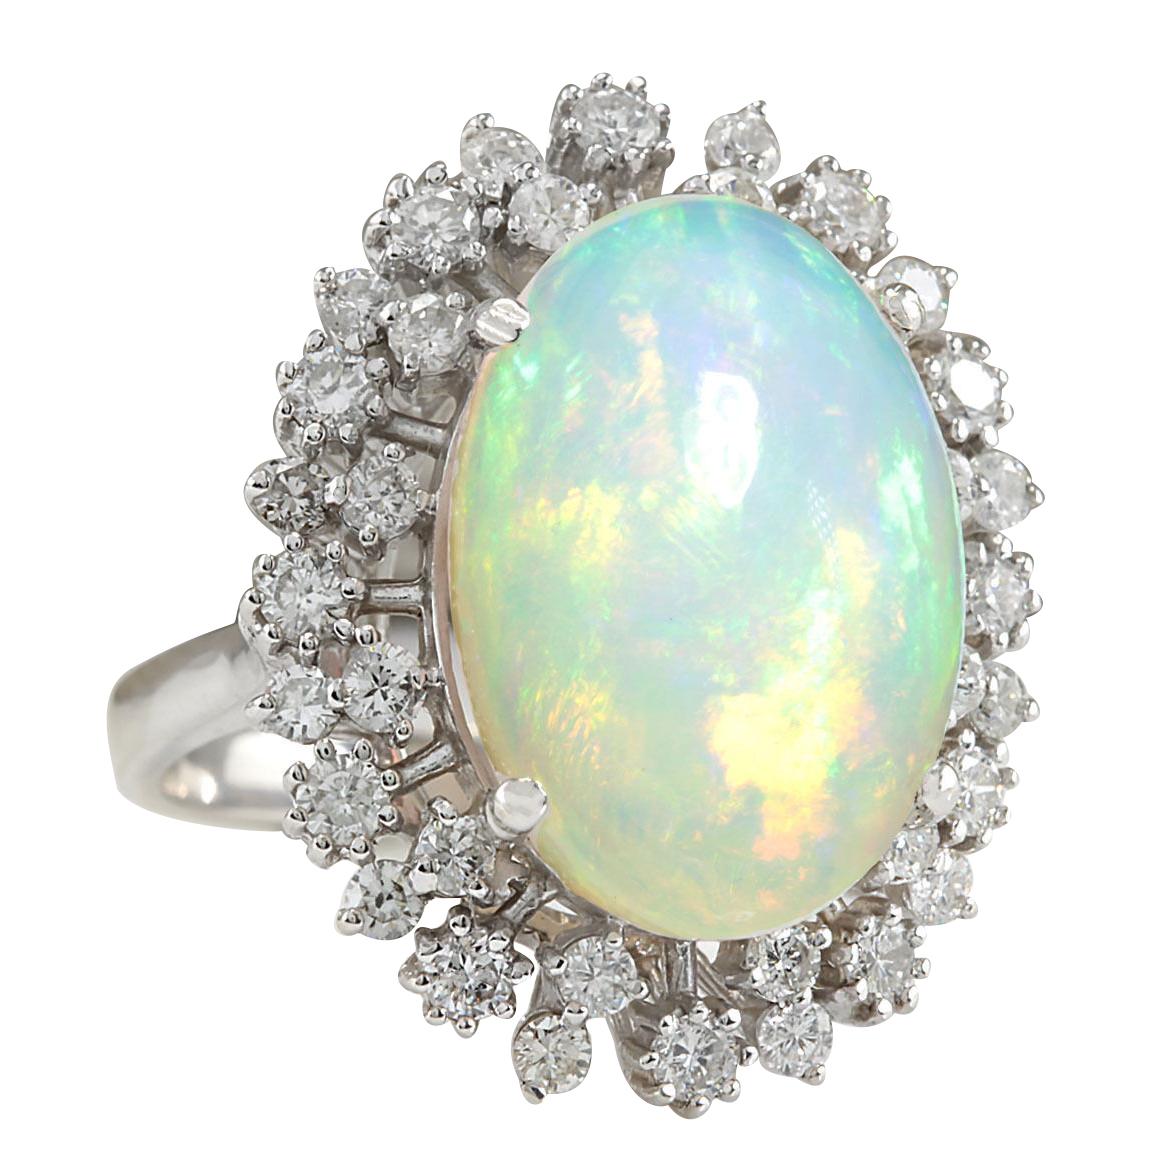 11.10 Carat Natural Opal 14 Karat White Gold Diamond Ring
Stamped: 14K White Gold
Total Ring Weight: 8.5 Grams
Total Natural Opal Weight is 9.85 Carat (Measures: 18.00x13.00 mm)
Color: Multicolor
Total Natural Diamond Weight is 1.25 Carat
Quantity: